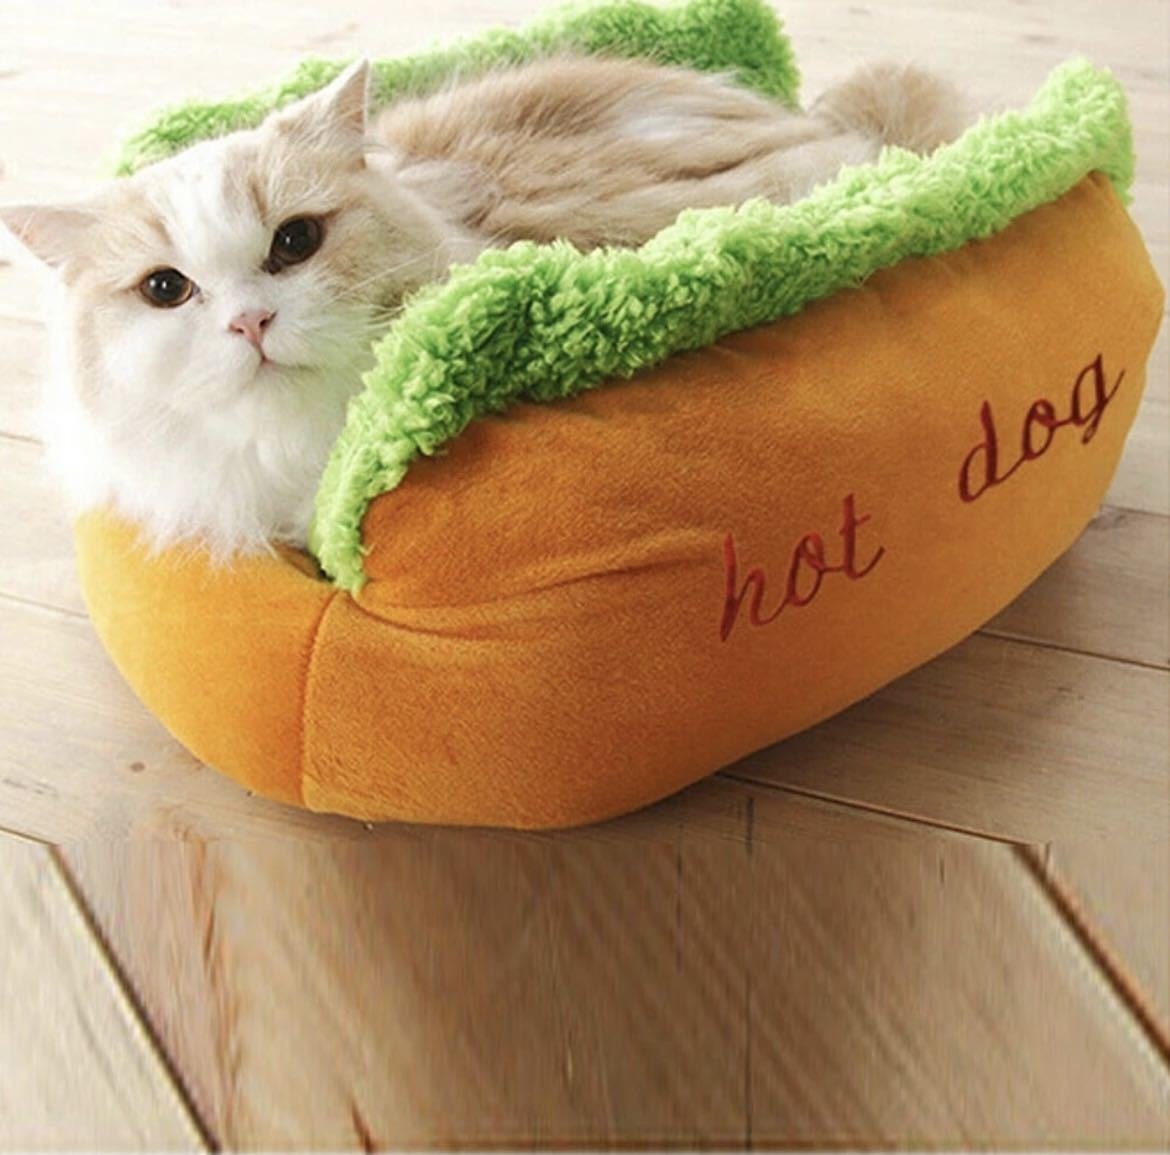 LHH781*L size hot dog bed for large dog lounge .- bed dog . dog warm soft bed kennel for mat soft fiber pet 